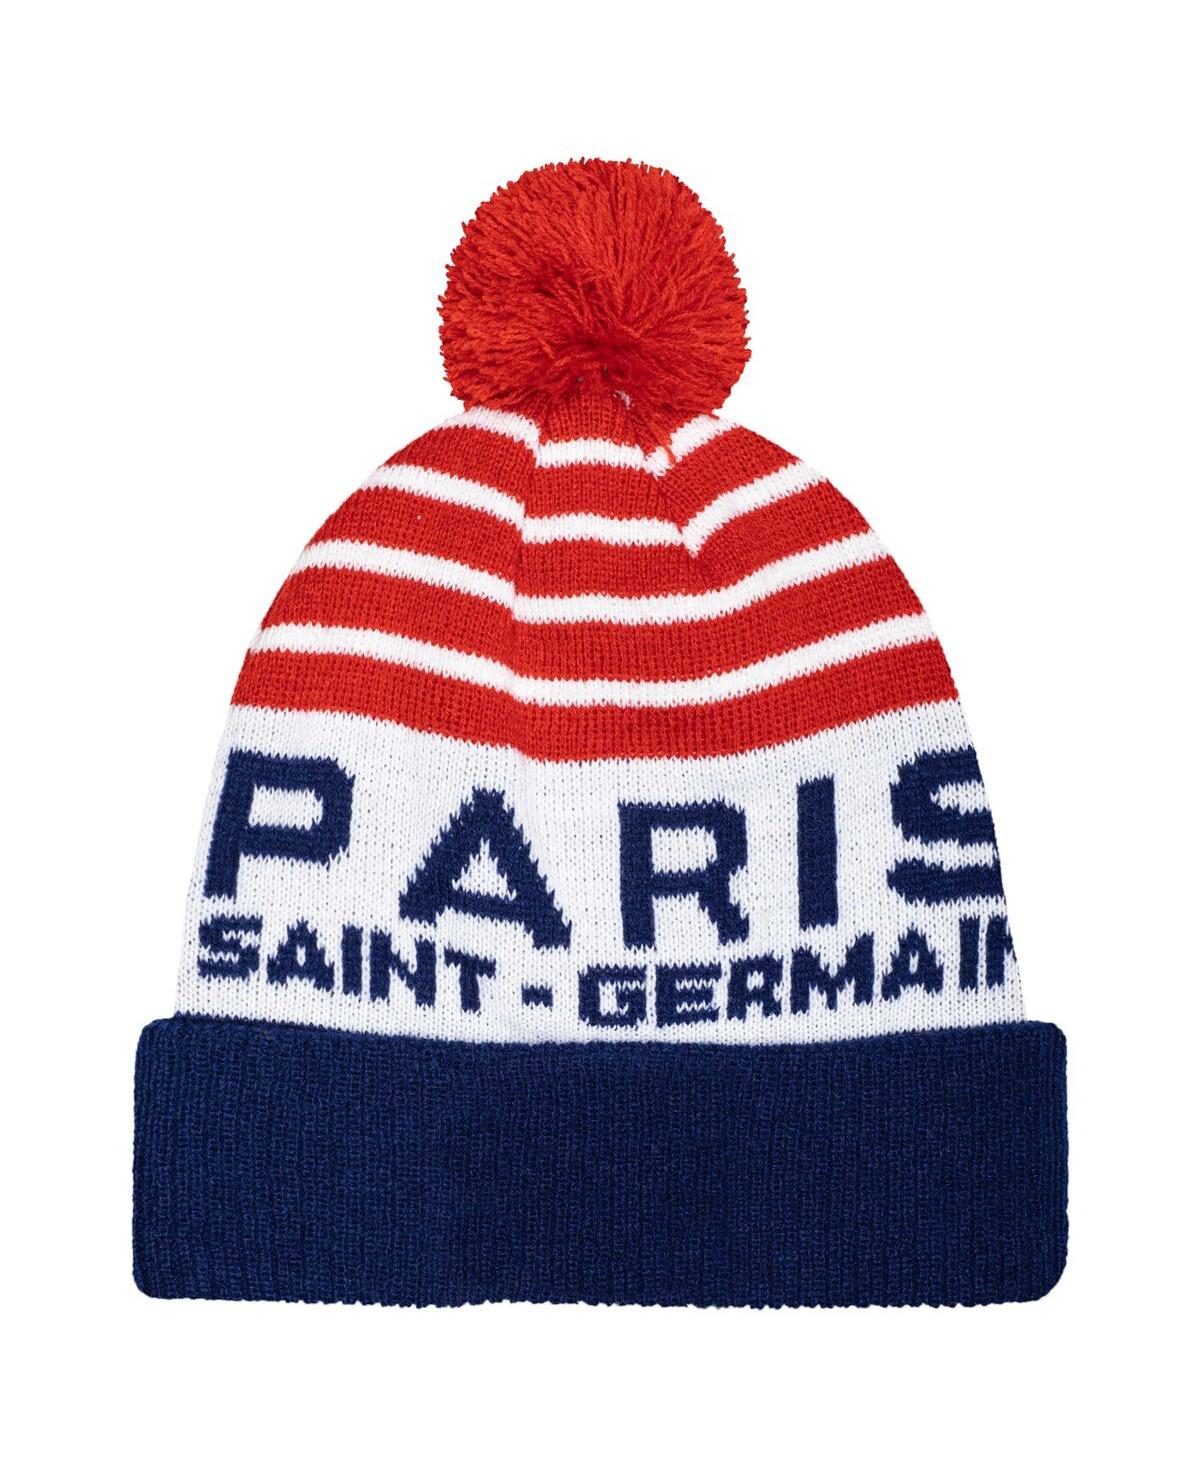 Fan Ink Men's Navy Paris Saint-germain Olympia Cuffed Knit Hat With Pom